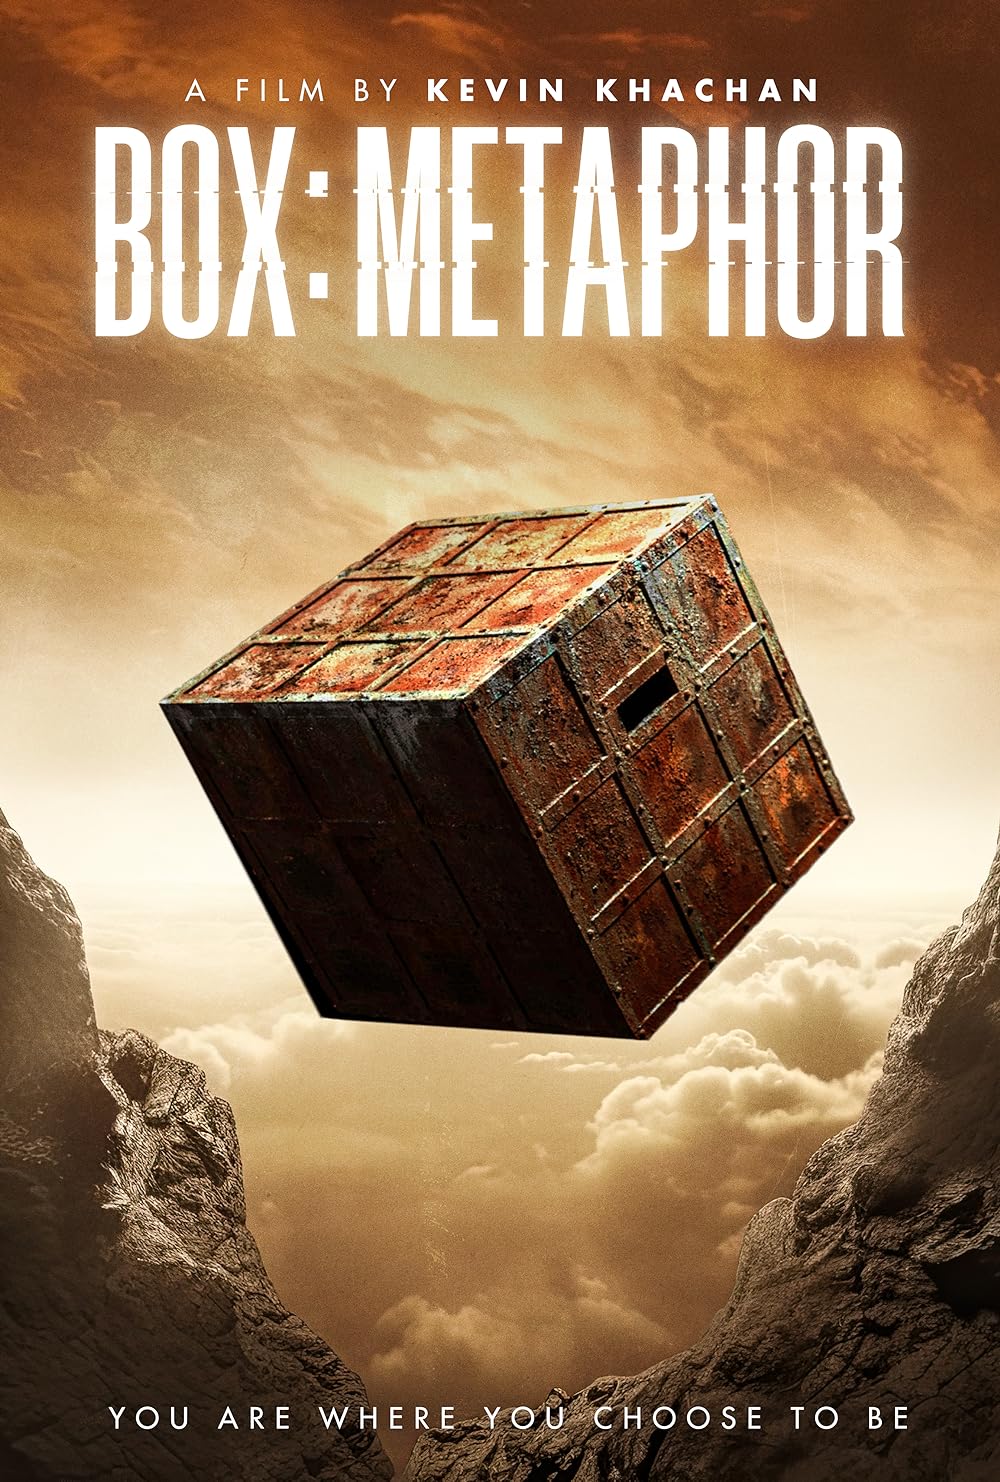 Box: Metaphor (2023) DVD Release Date